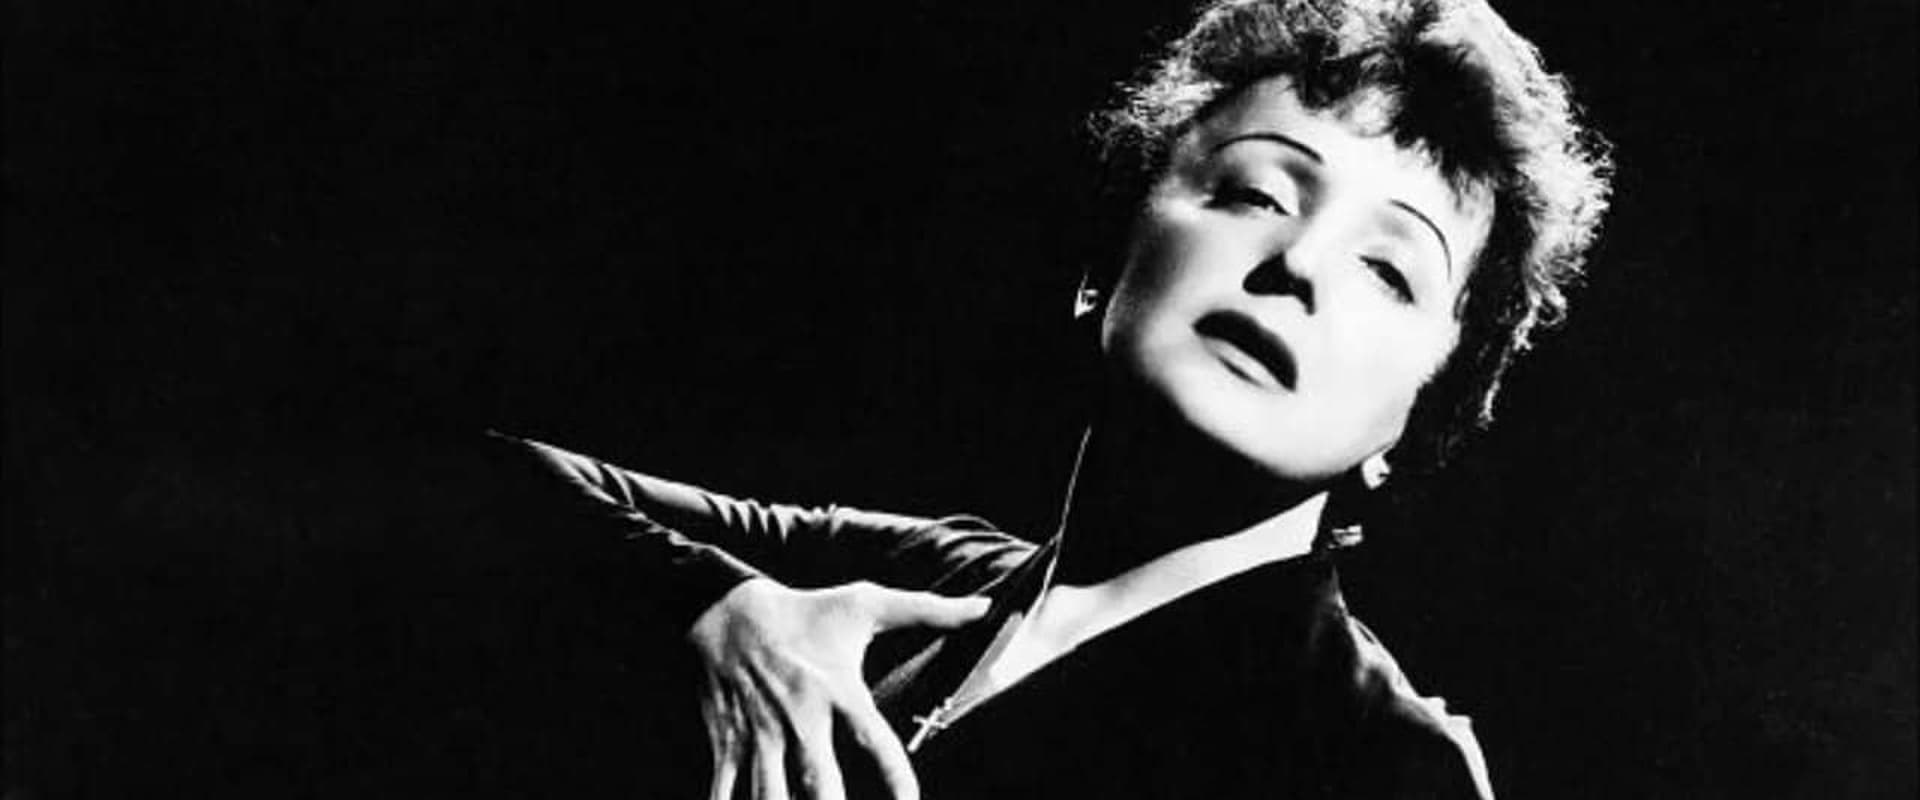 Édith Piaf : L'Hymne à la môme